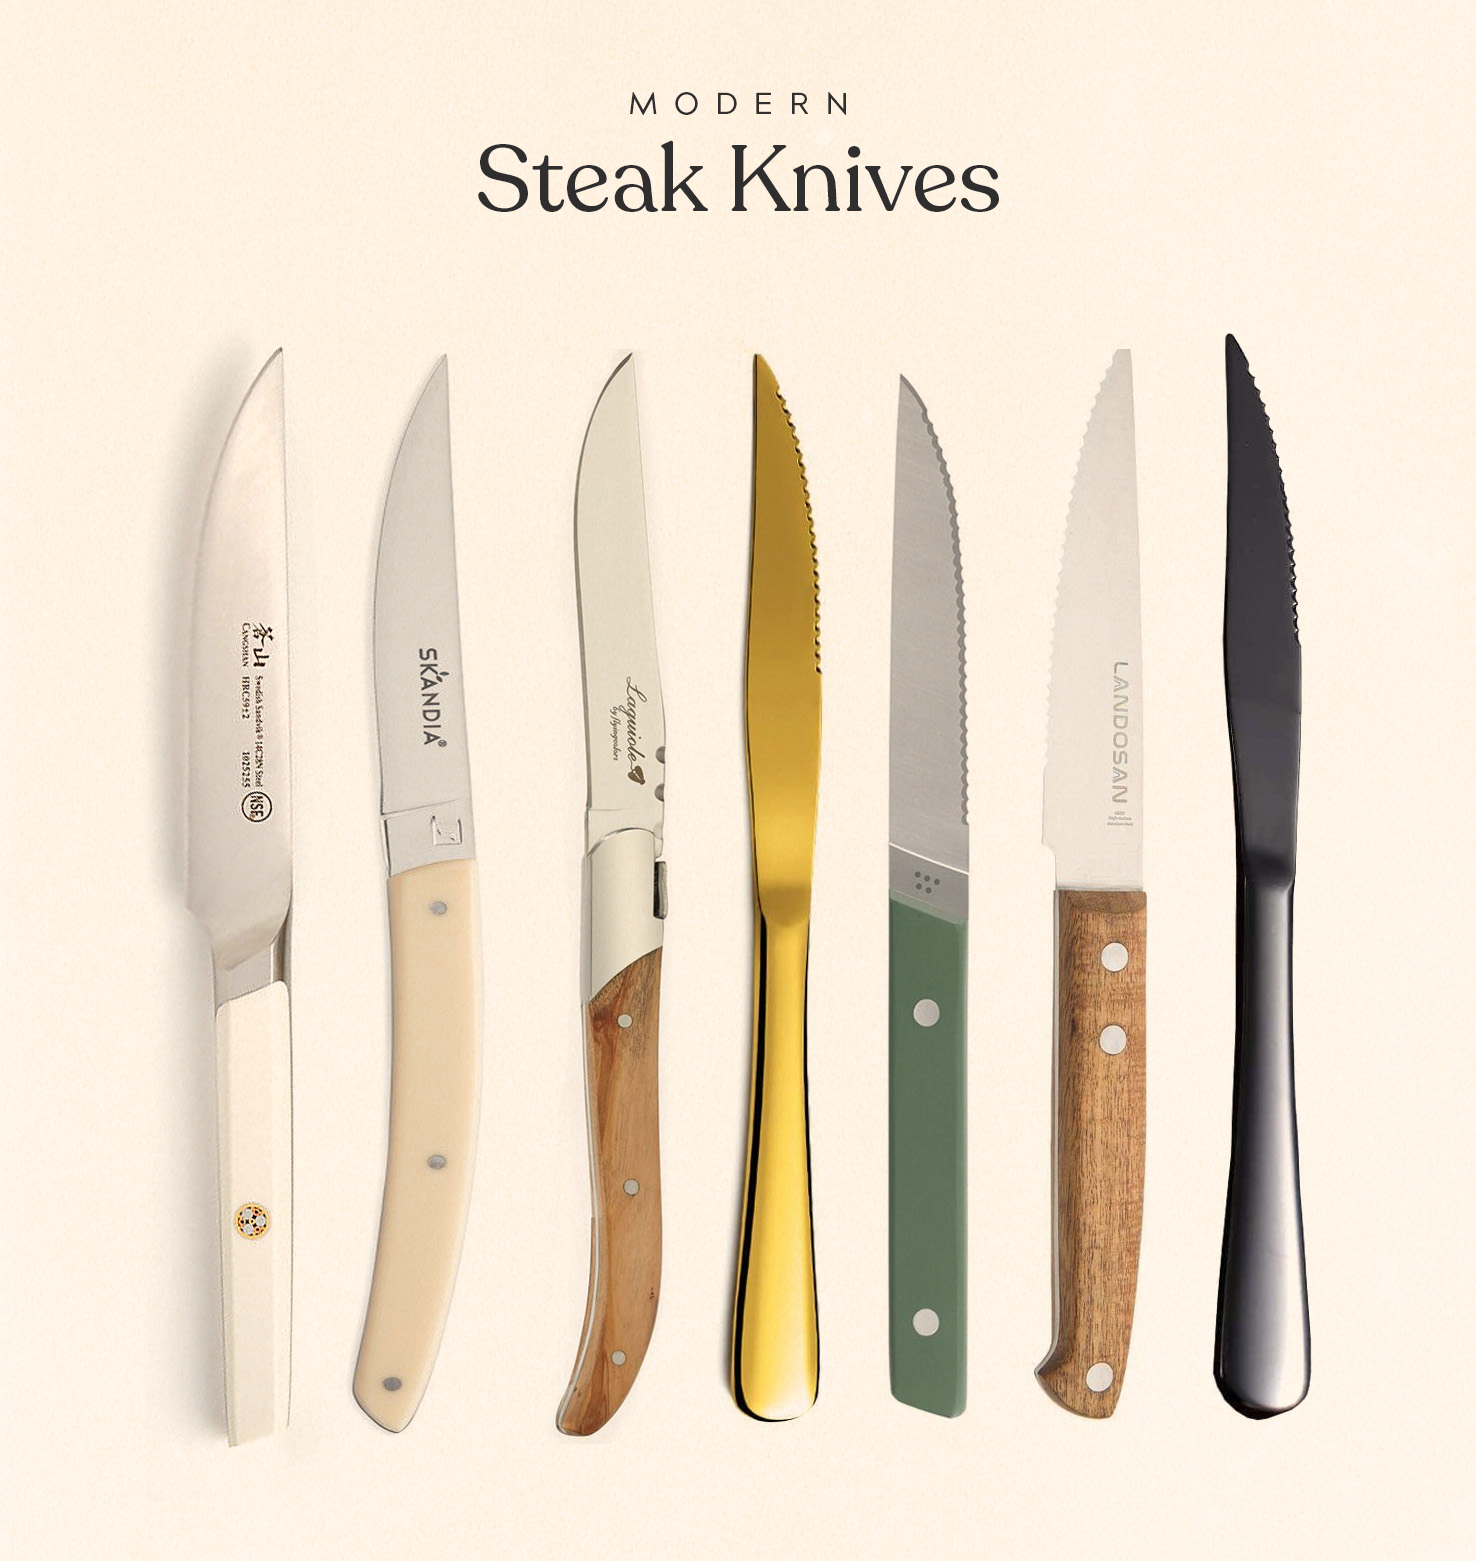 https://almostmakesperfect.com/wp-content/uploads/2021/10/steak-knives.jpg